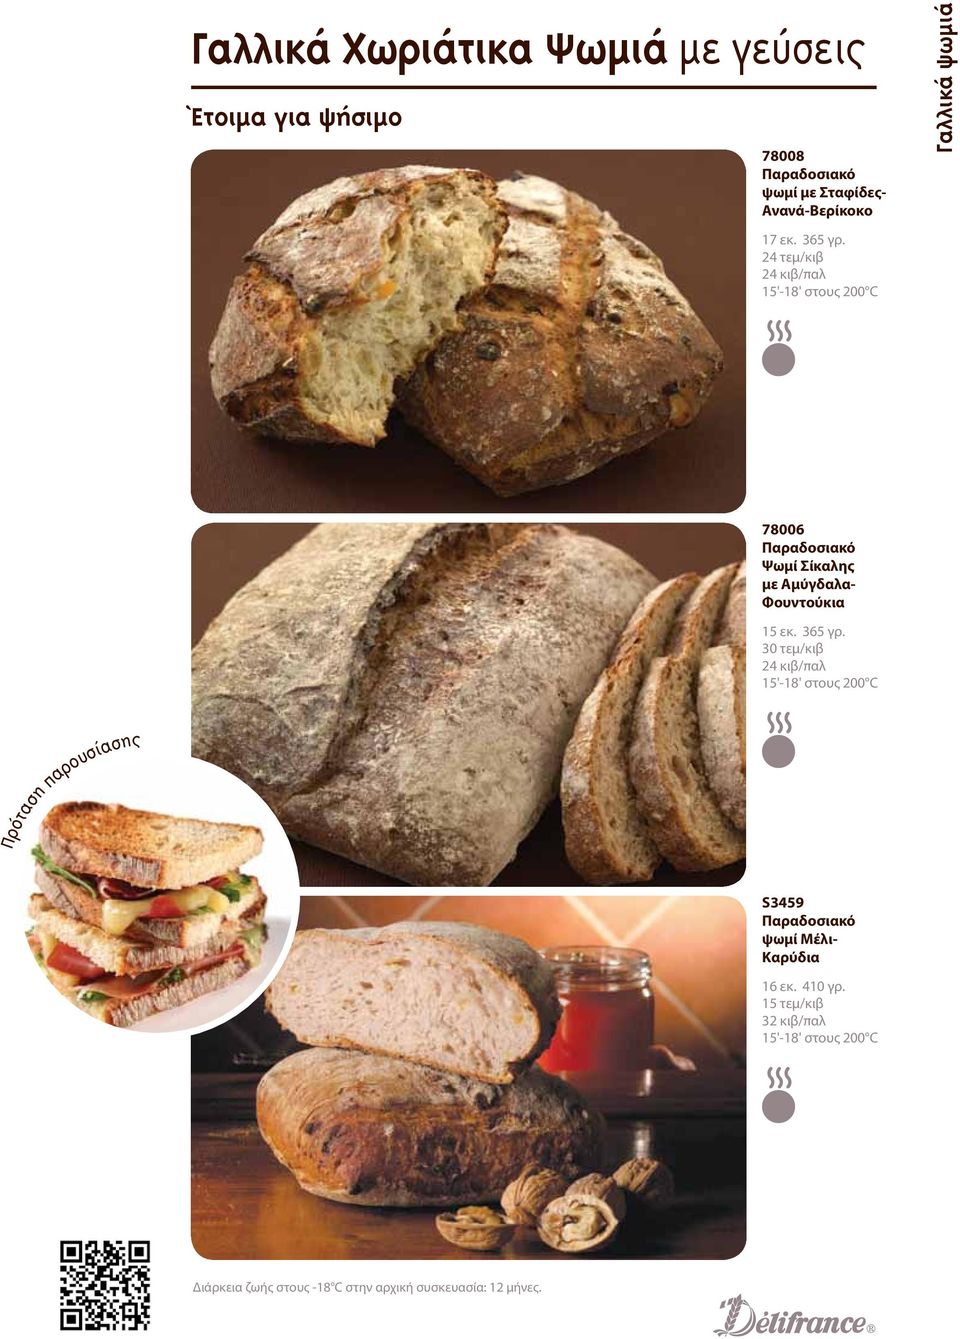 24 τεμ/κιβ 24 κιβ/παλ 15'-18' στους 200 C 78006 Παραδοσιακό Ψωμί Σίκαλης με Αμύγδαλα- Φουντούκια 15 εκ. 365 γρ.